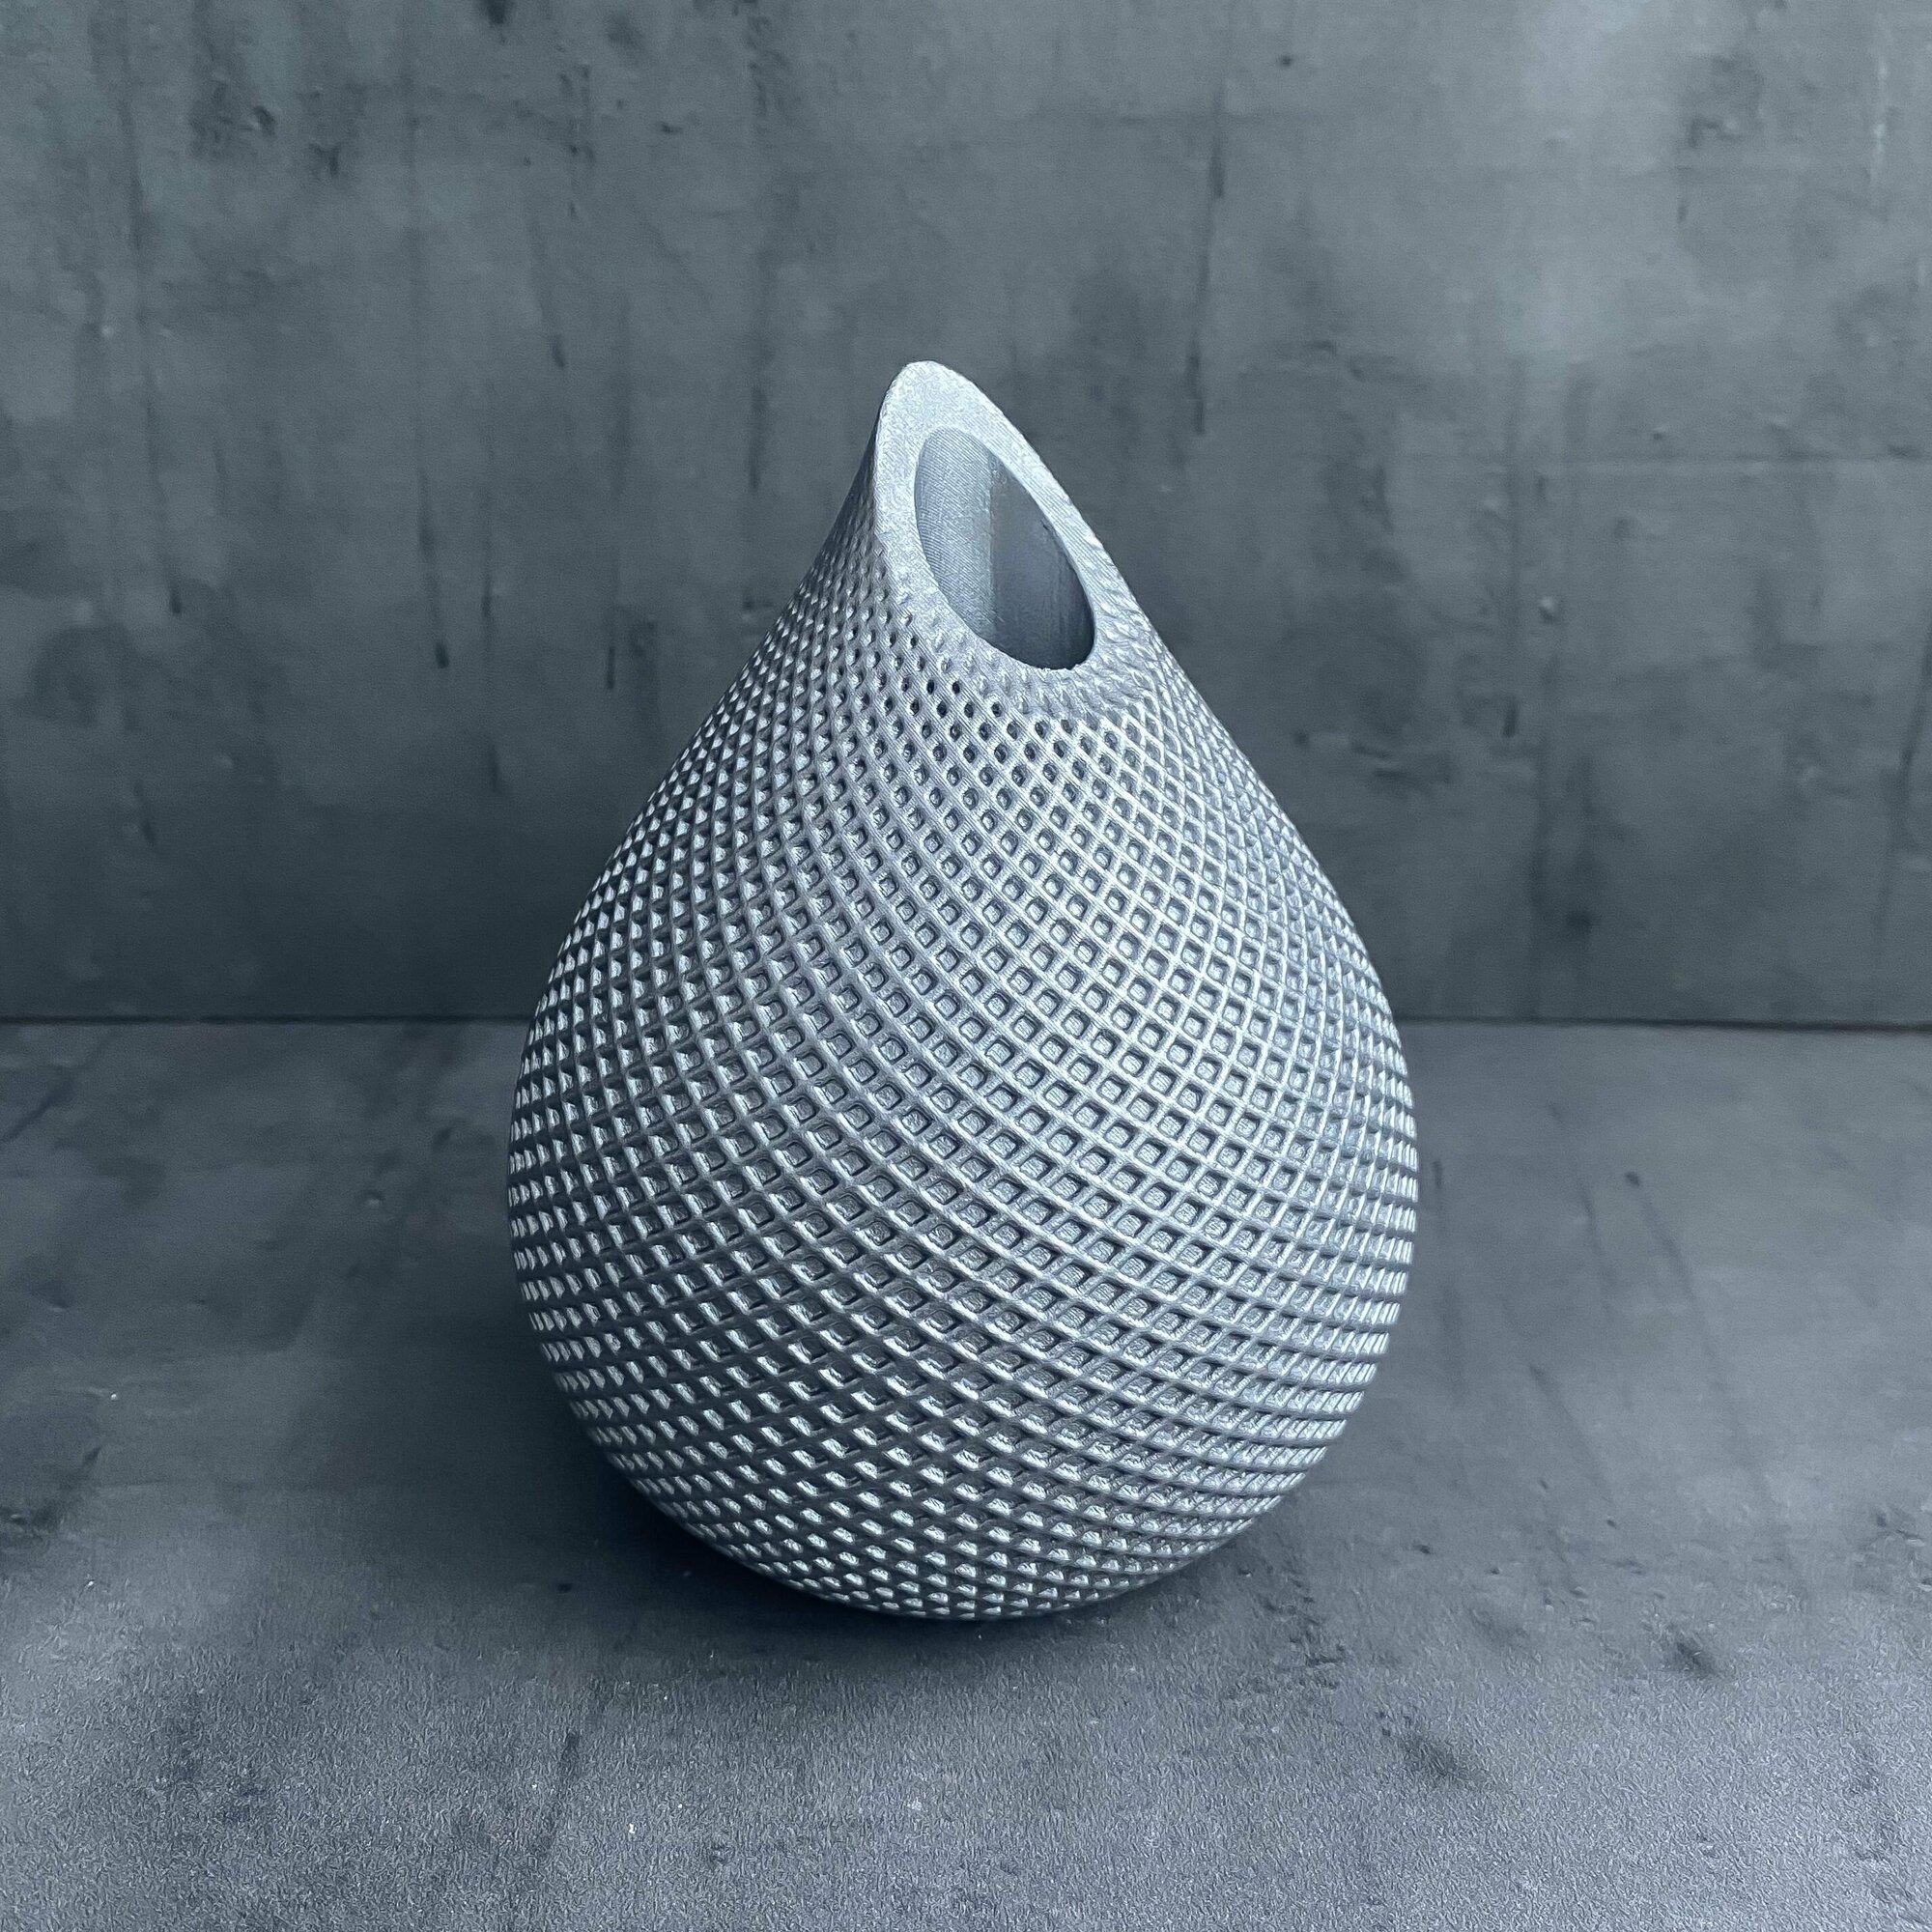 Мини-ваза "Капля" из гипса, серебристого цвета, высота 13 см